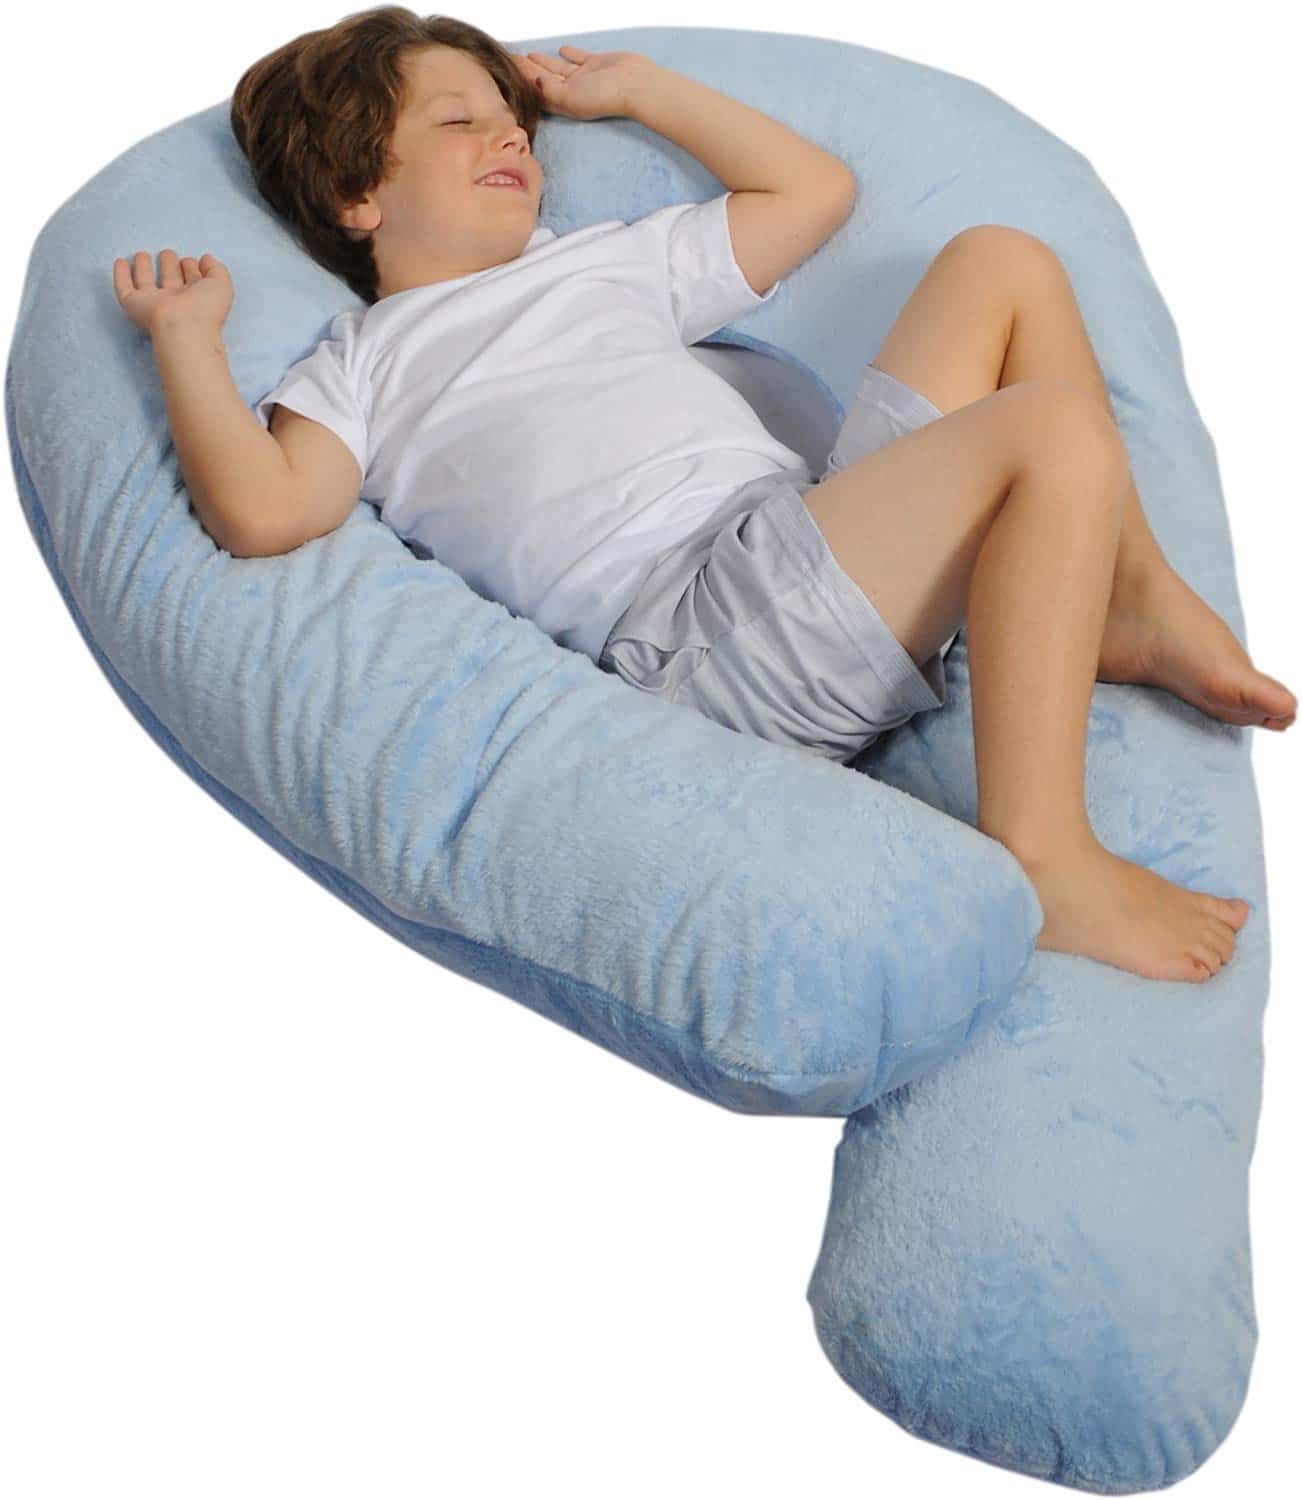 Moonlight Slumber Kids Comfort-U - Body Pillow for Kids + Light Blue Plush Pillow Cover